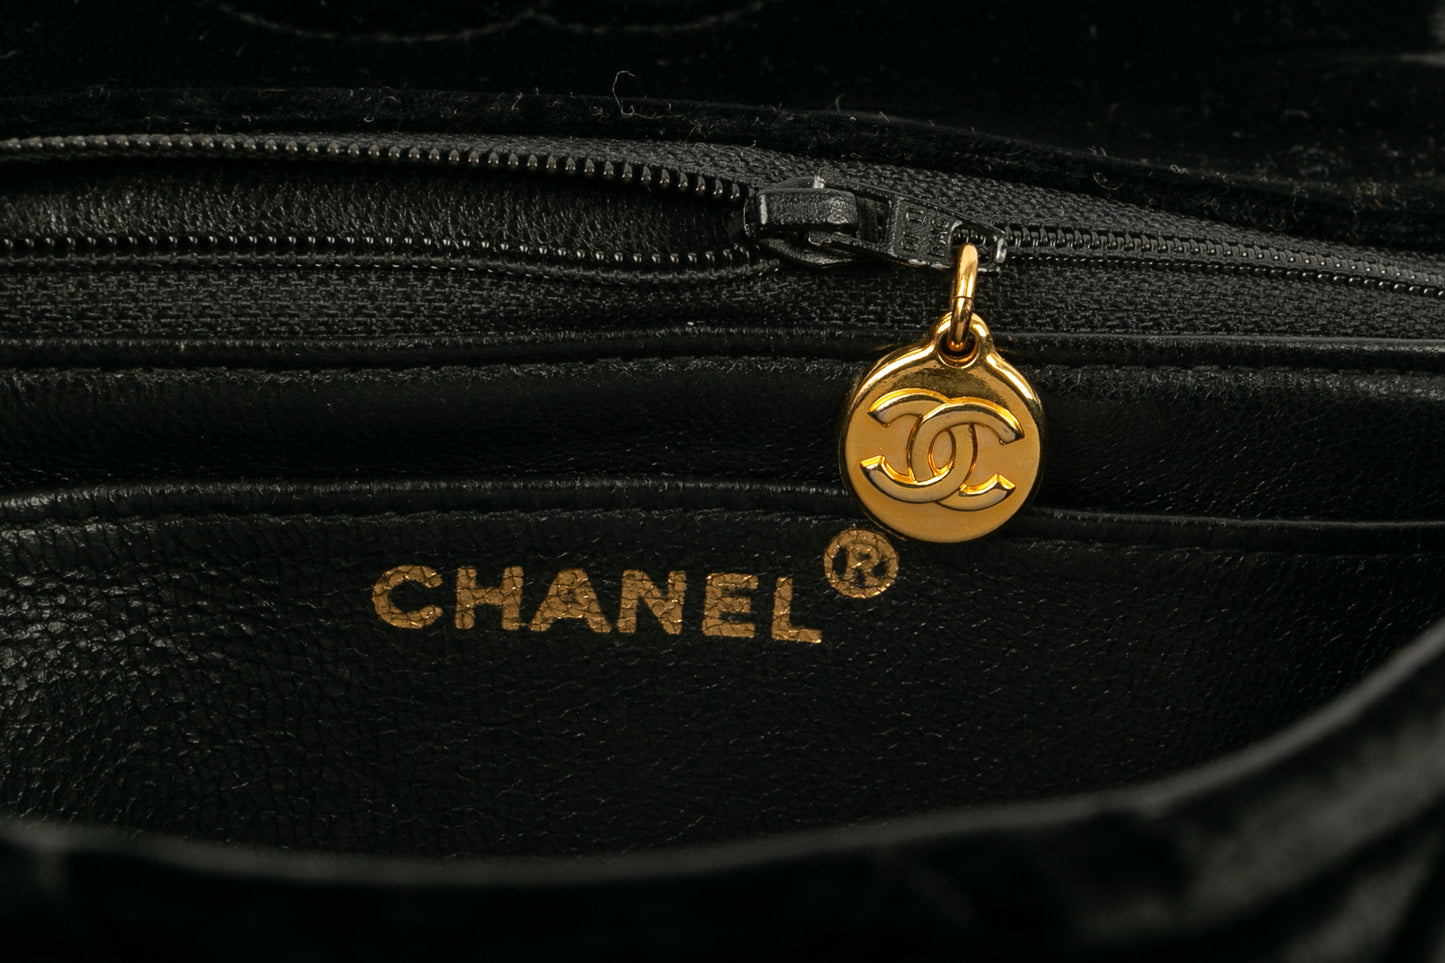 Sac bijou Chanel 1989 / 1991